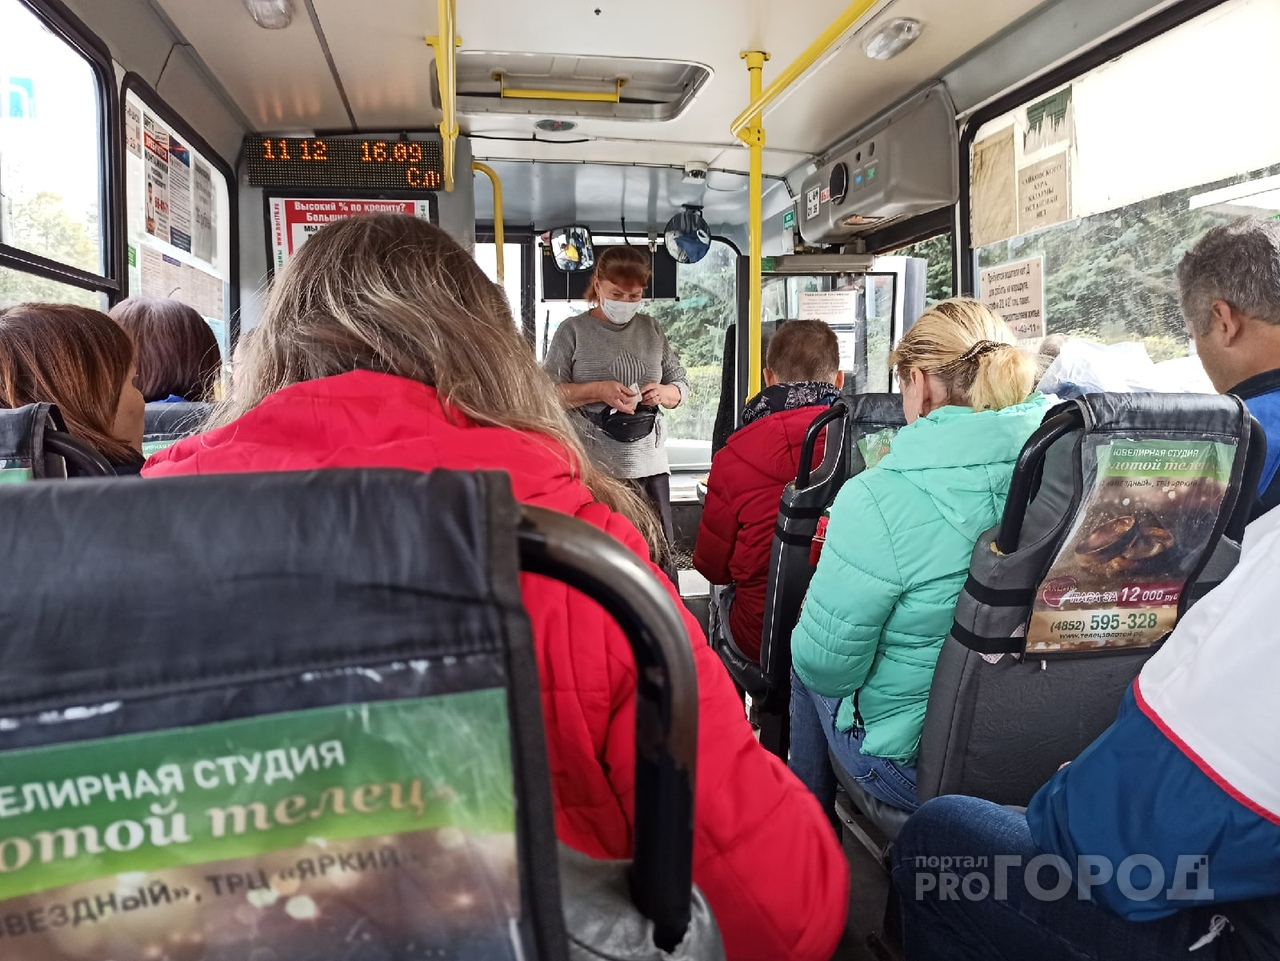 Таксисты оценят: мэрия Ярославля обнародовала новую транспортную схему